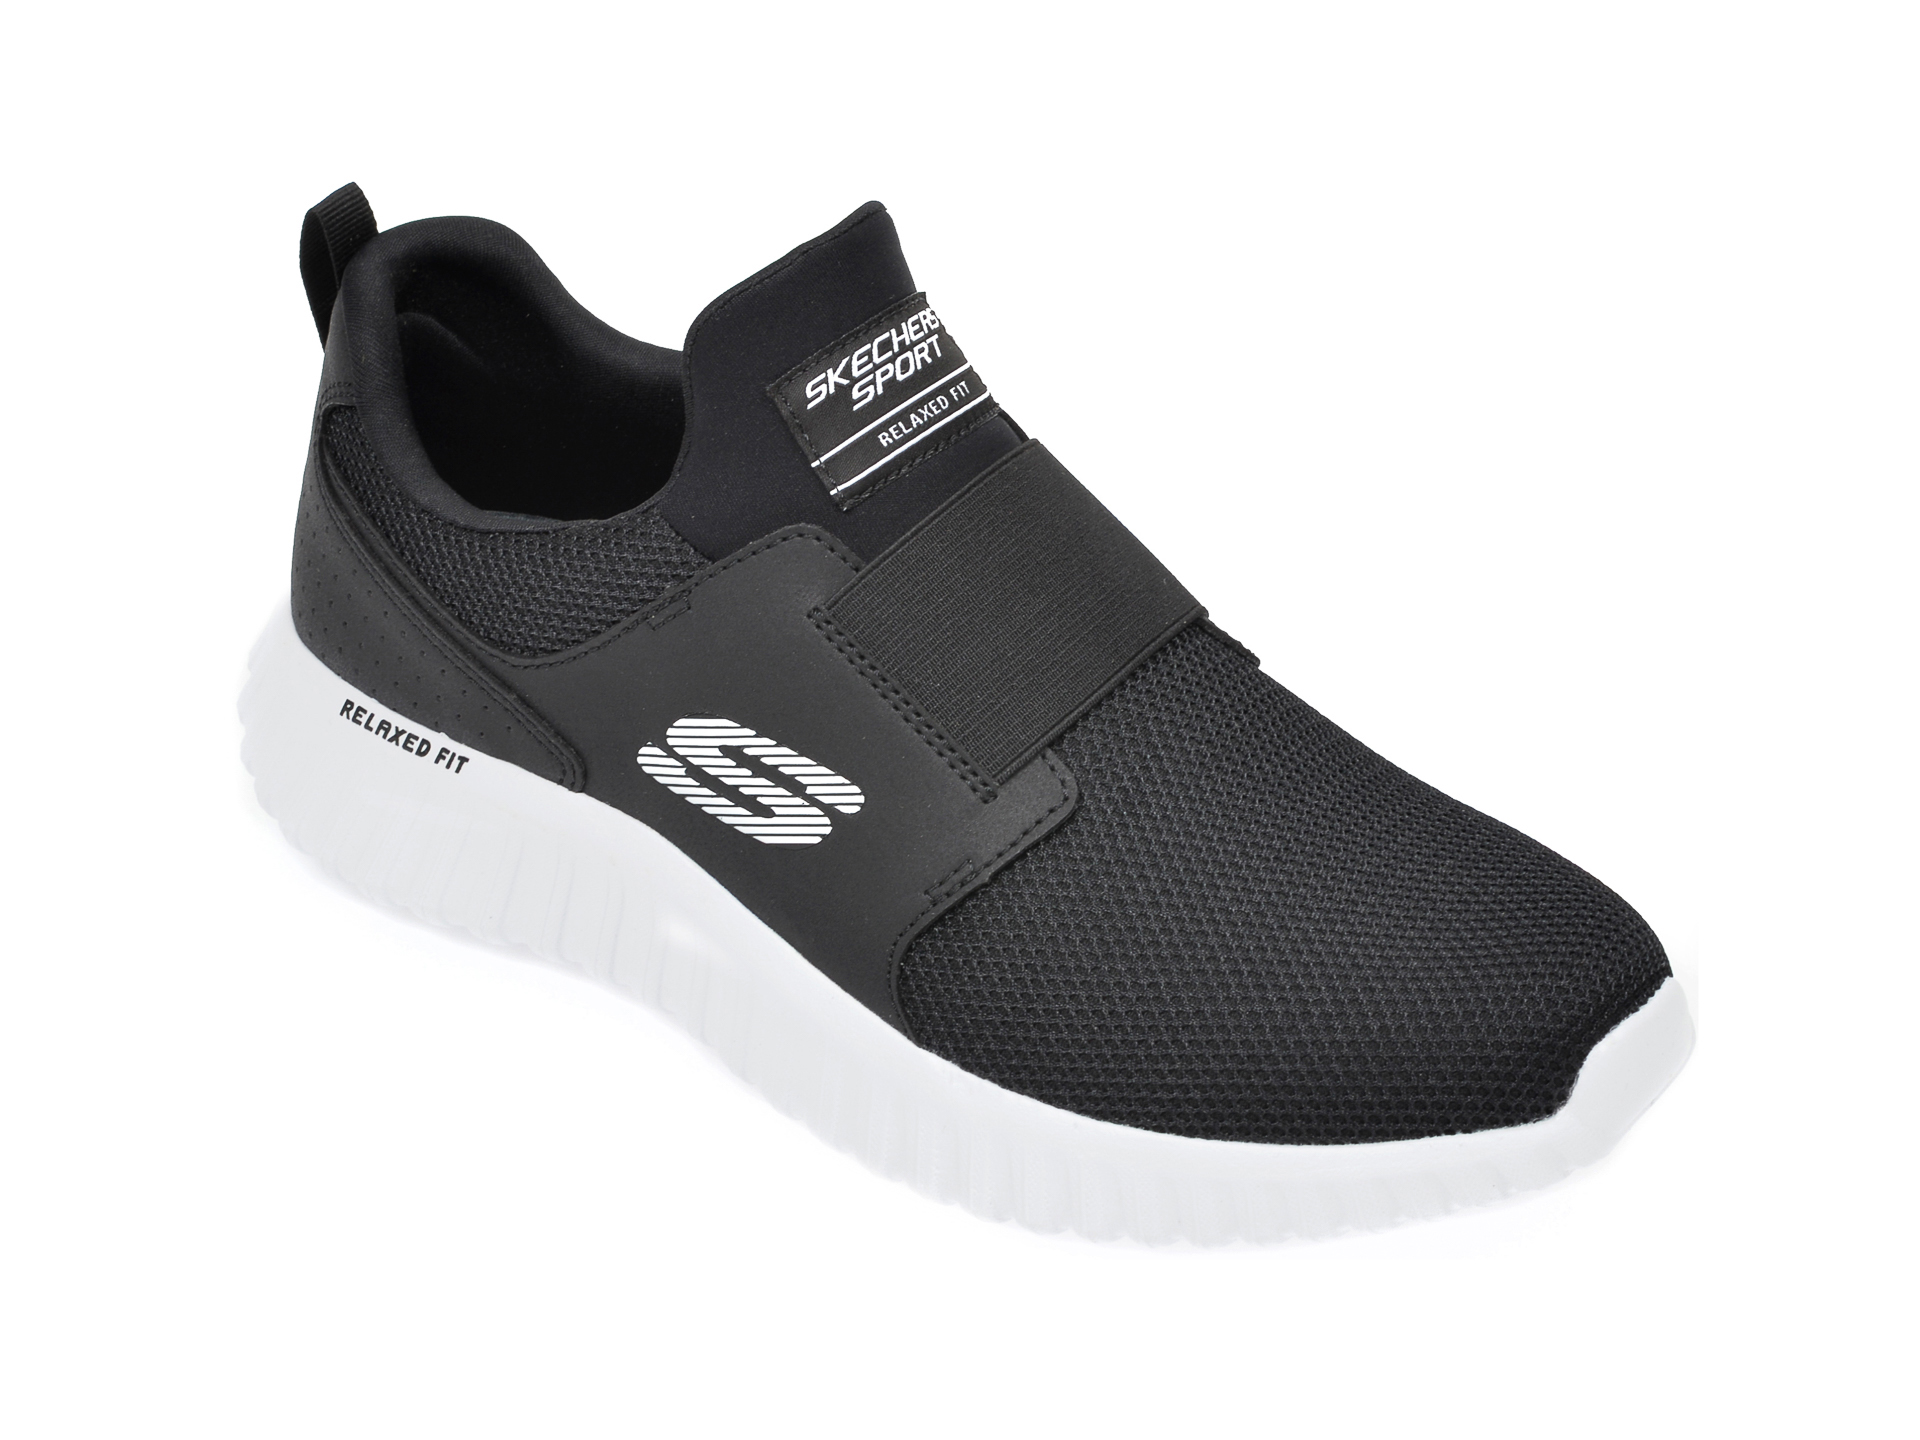 Pantofi sport SKECHERS negri, Depth Charge 2.0, din material textil salamandershop.ro imagine reduceri